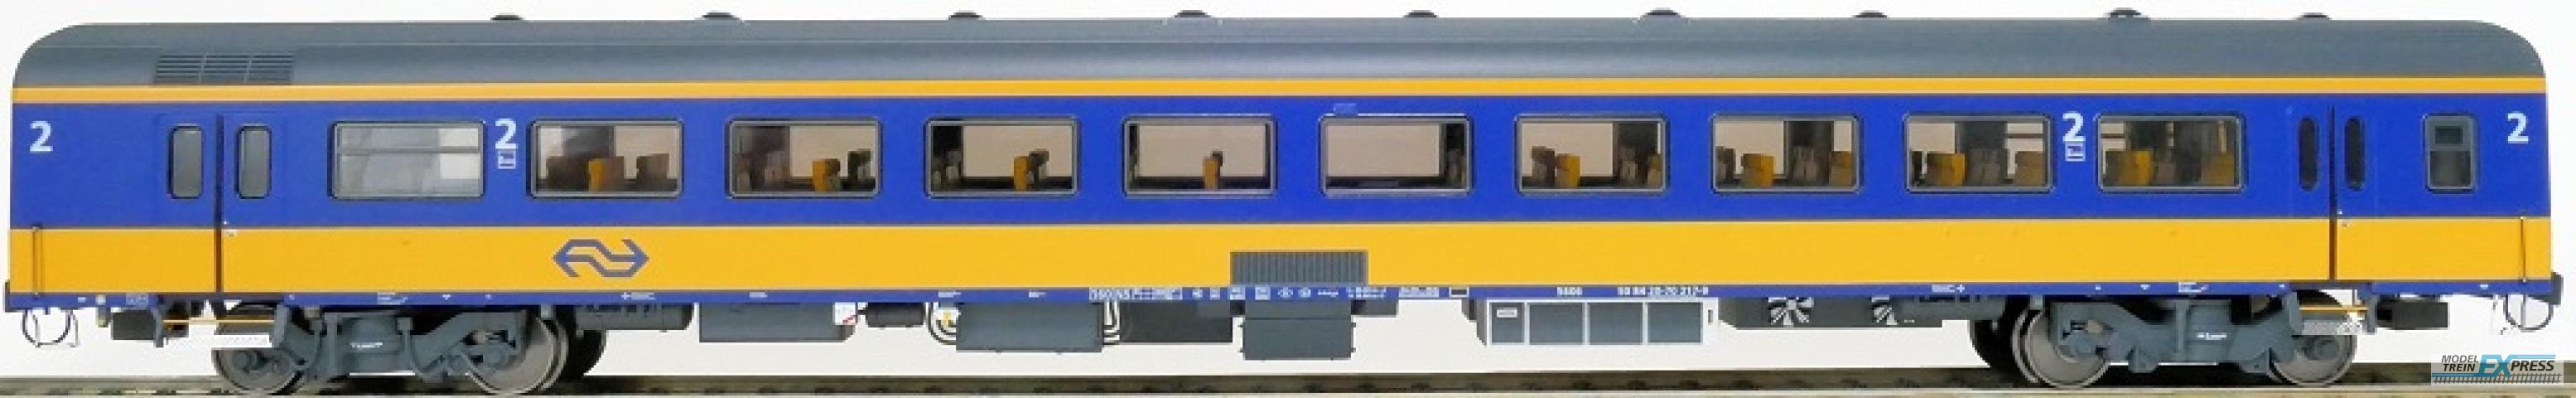 Exact-train 11175 NS ICRm Garnitur 4 Reisezugwagen B( Neue farbe Gelb / Blau)mit Beleuchtung und Figuren, Ep. V